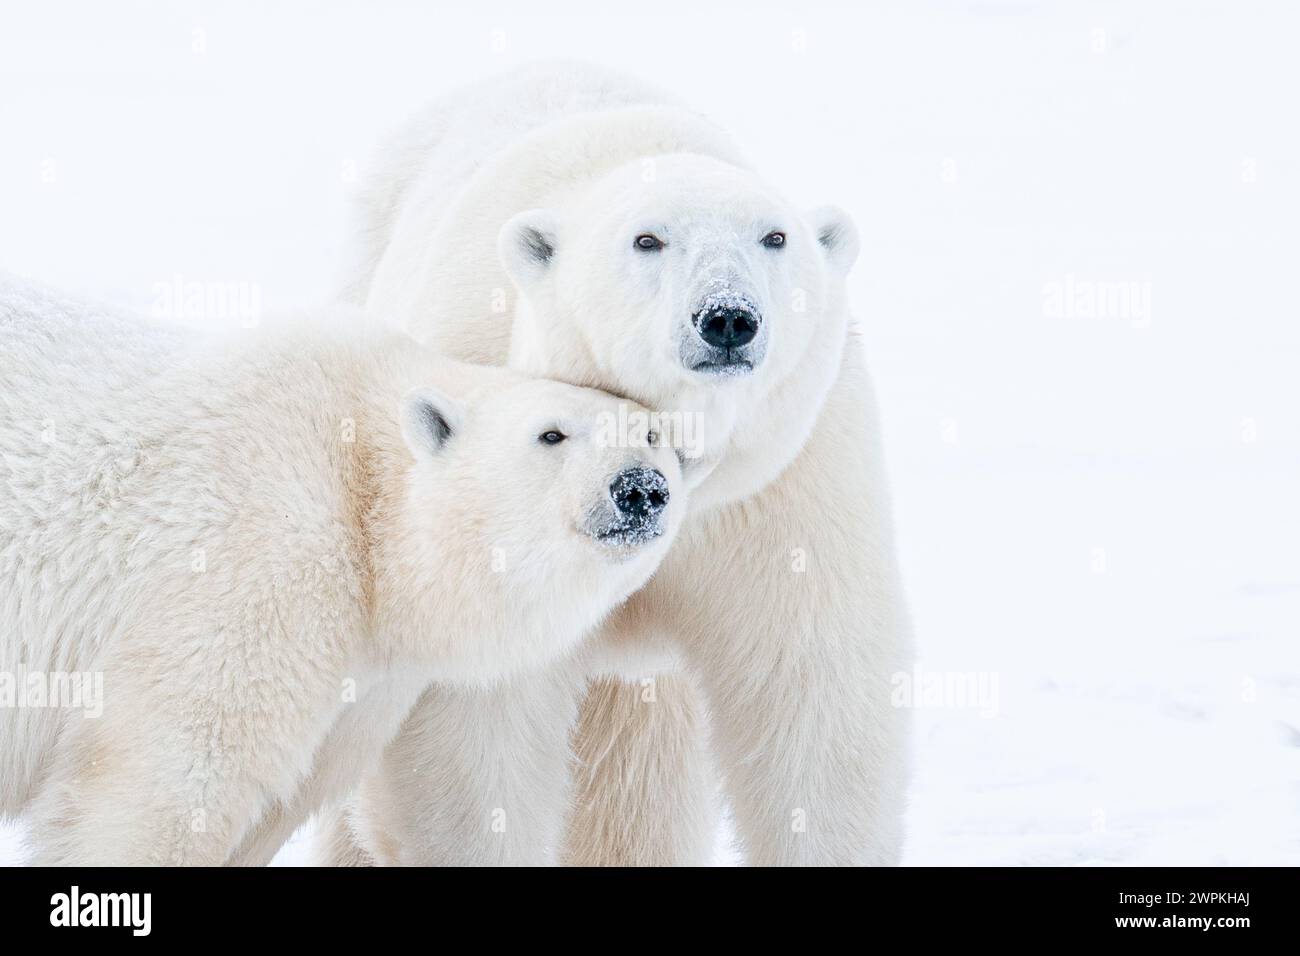 Nous regardons mignon ensemble CANADA ADORABLES images de deux ours polaires jouant-se battant l'un avec l'autre vous fera rire. Autour de deux ans, thés Banque D'Images